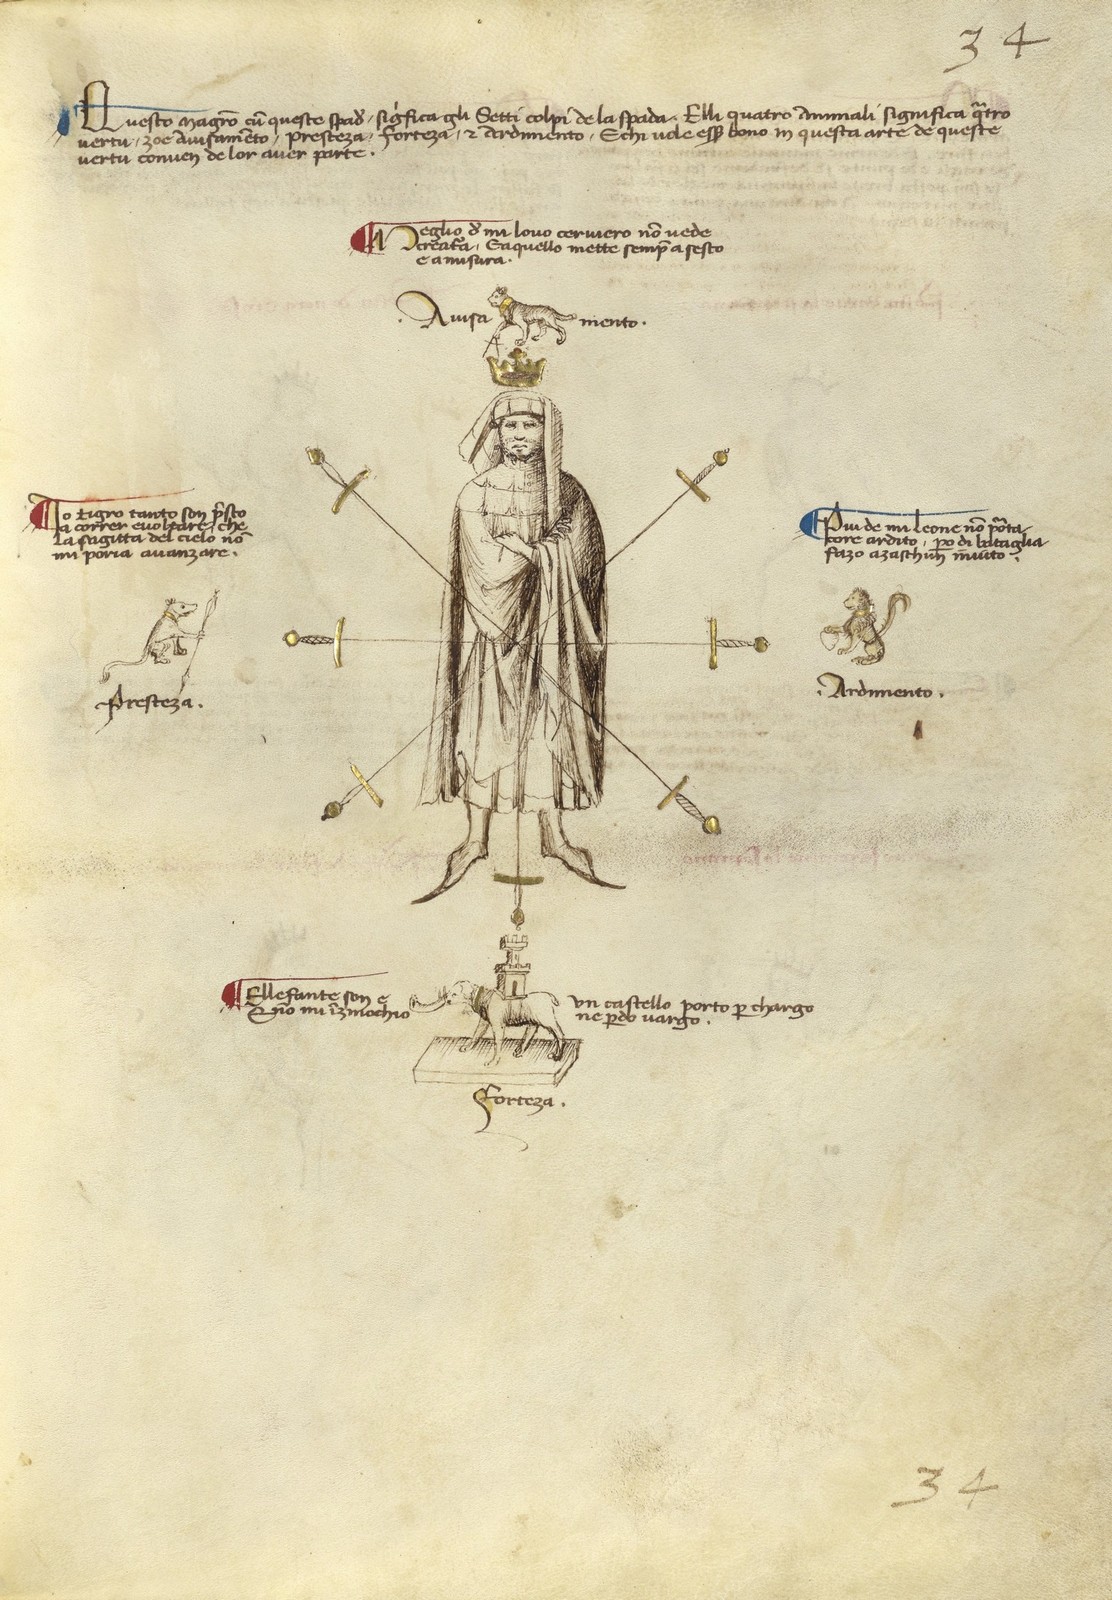 Le manuel de combat de Fiore dei Liberi au Moyen Âge